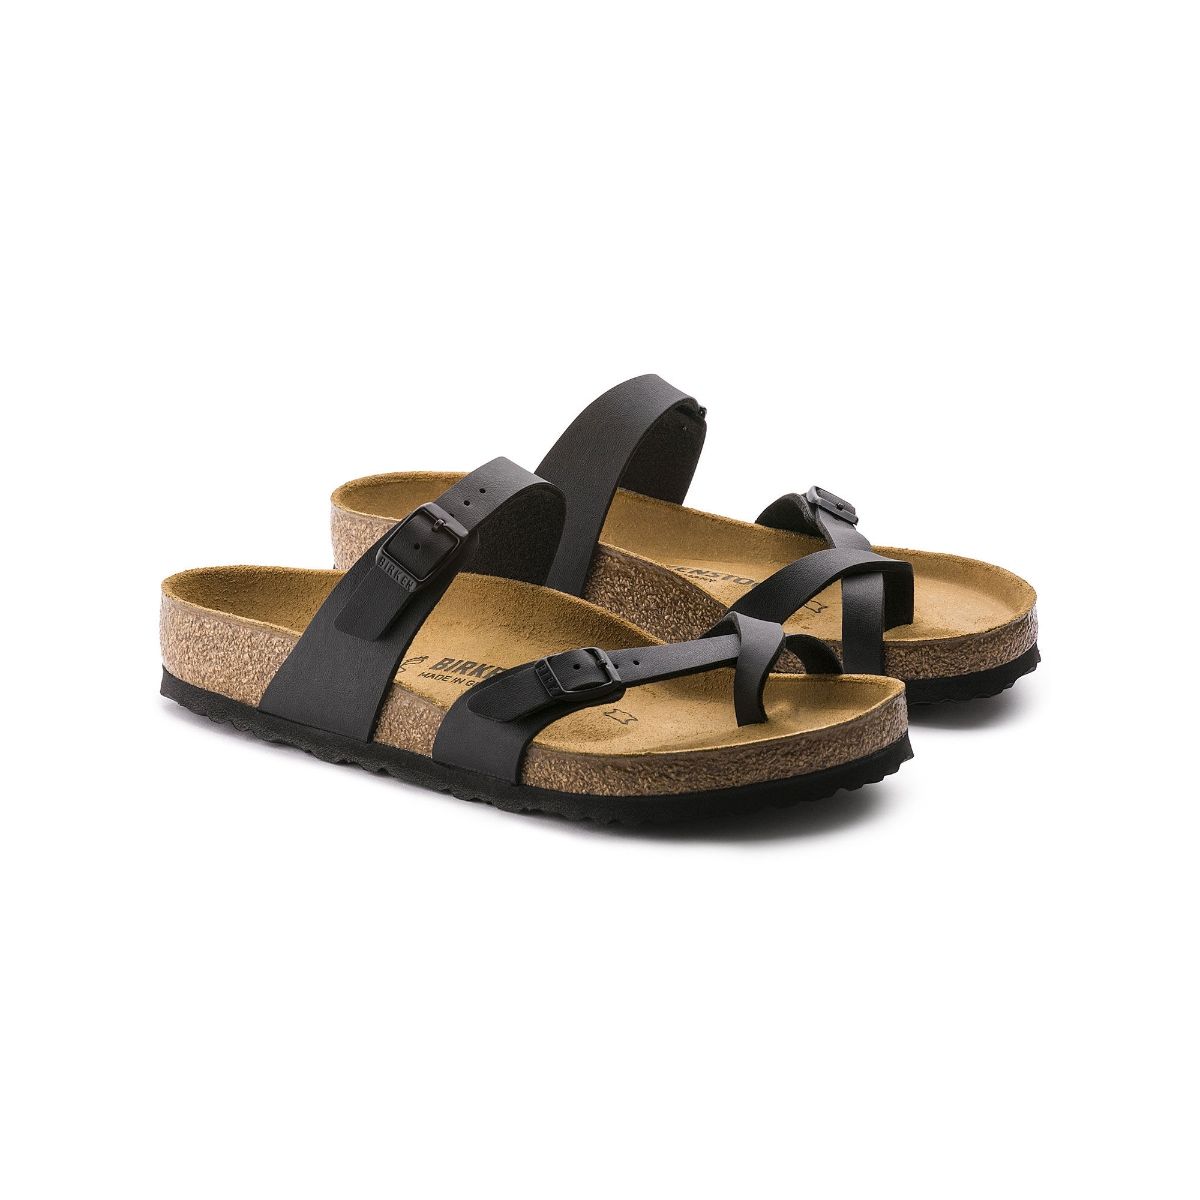 Birkenstock Black Sandals - Buy Birkenstock Black Sandals online in India